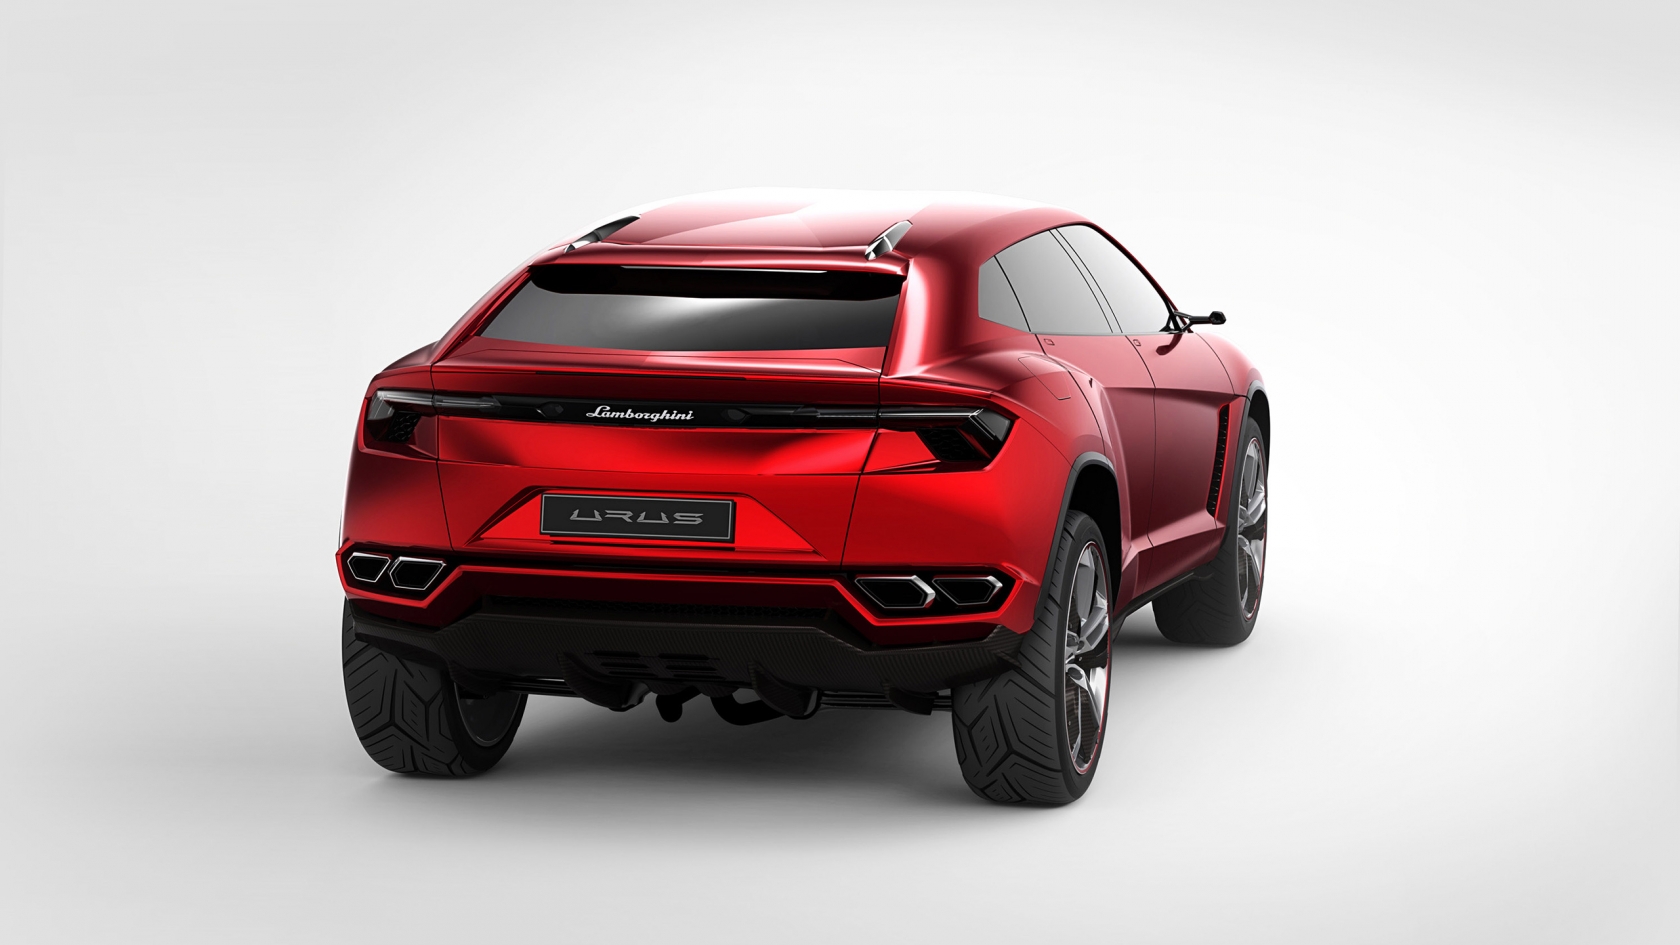 Lamborghini Urus Concept Rear Studio for 1680 x 945 HDTV resolution